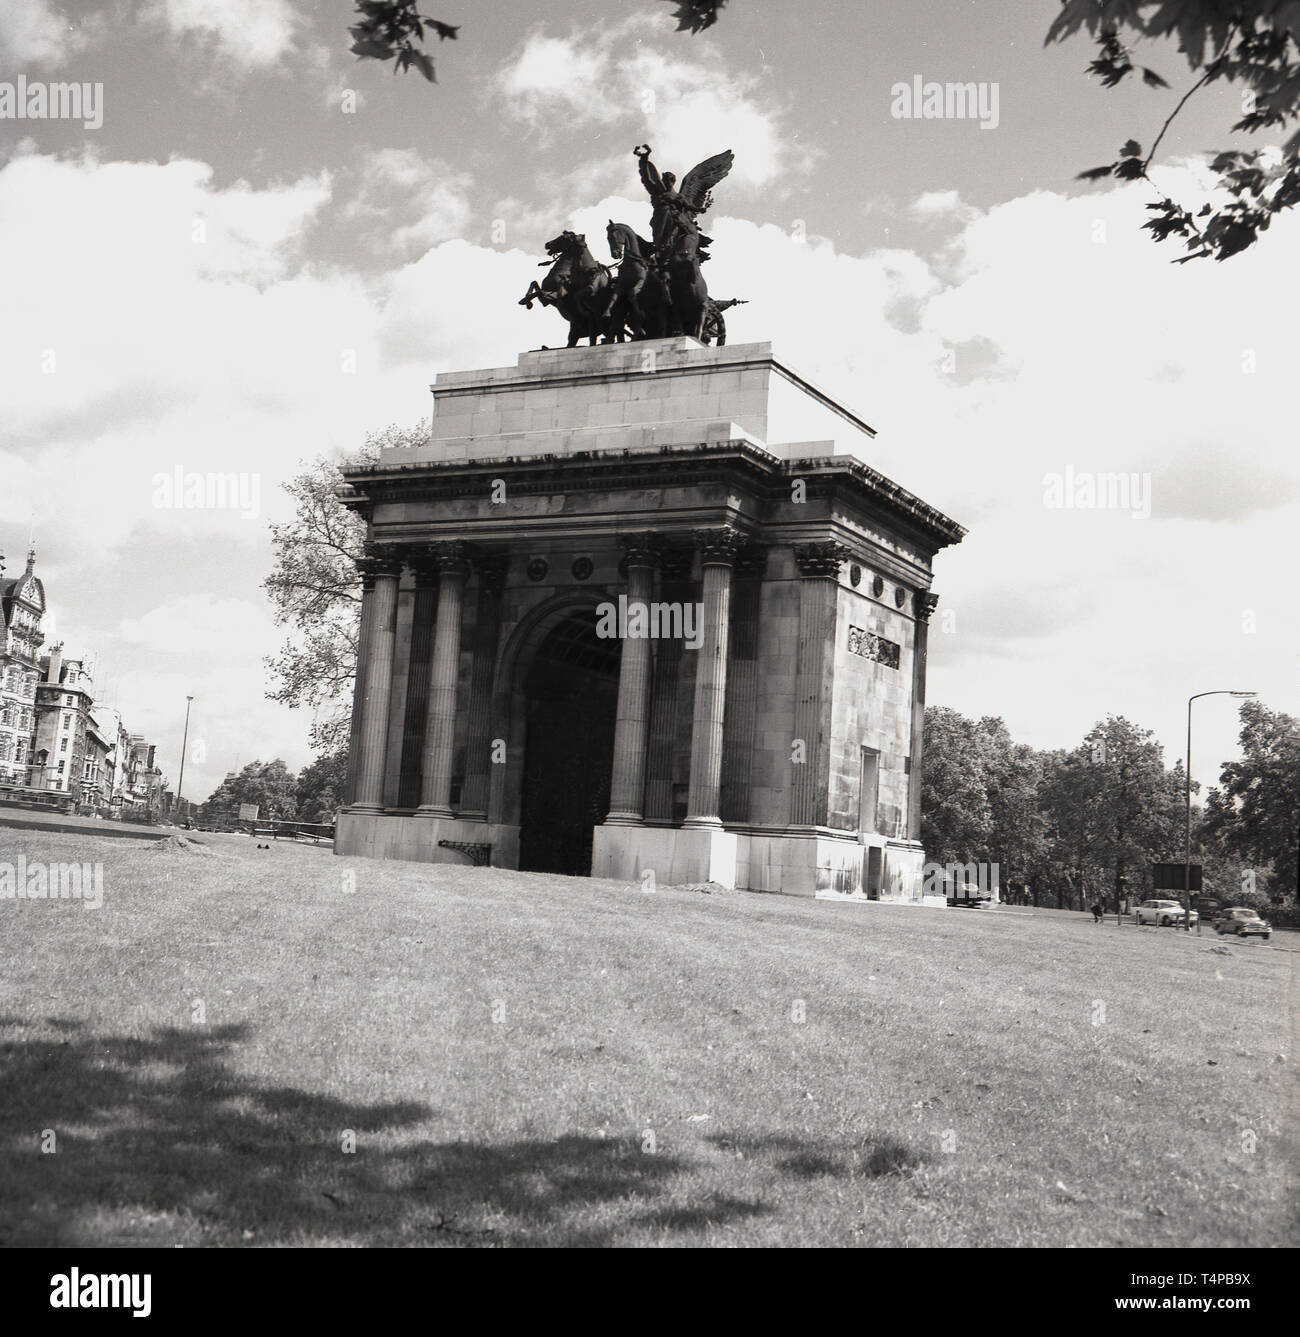 Années 1960, historiques, voir Wellington Arch, Hyde Park Corner, London, à partir de cette époque. Un quadrige de bronze ( ancien char à quatre chevaux) a surmonté cela depuis 1912. Jusqu'en 1992, il abritait la plus petite station poice à Londres. Banque D'Images